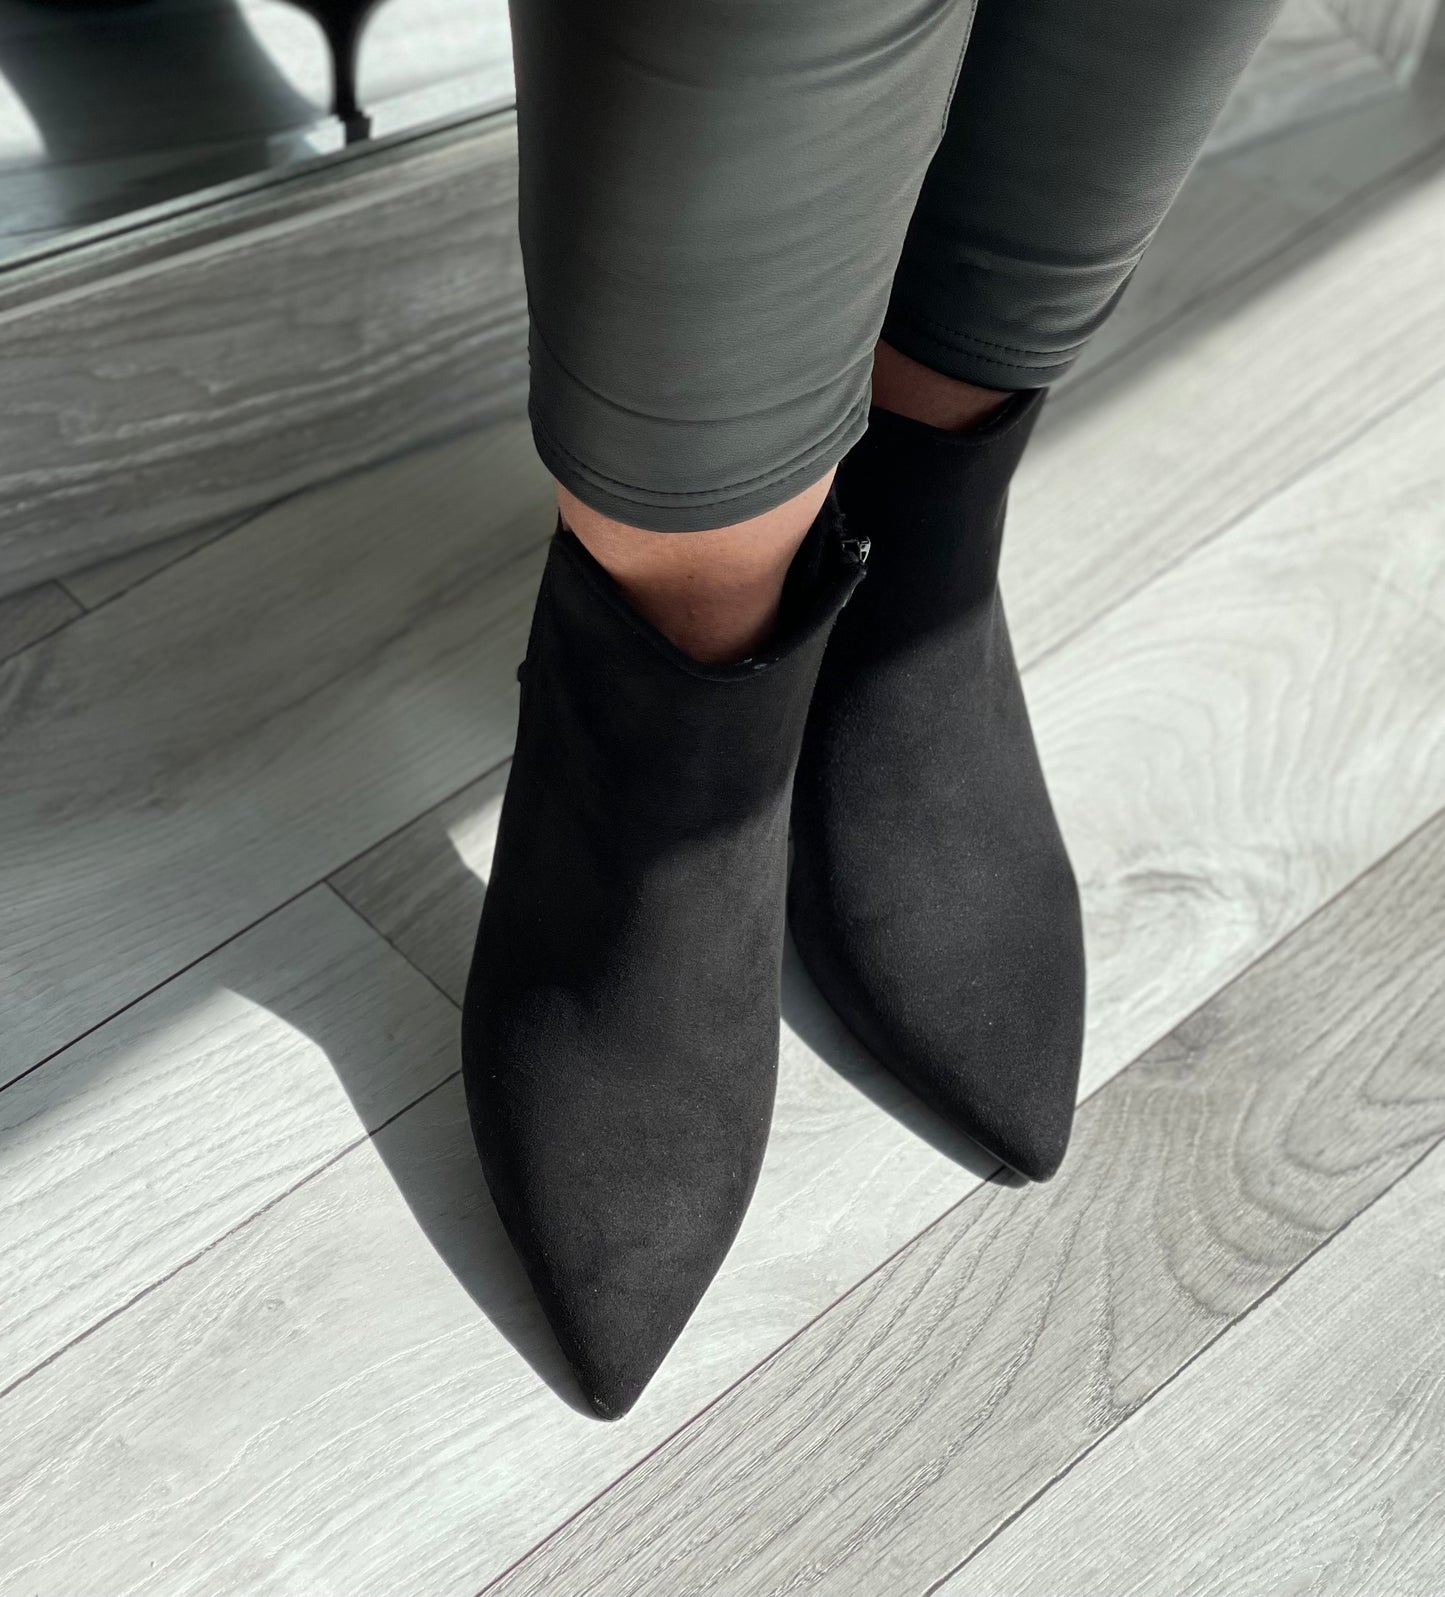 S Oliver - Black Dress Boot